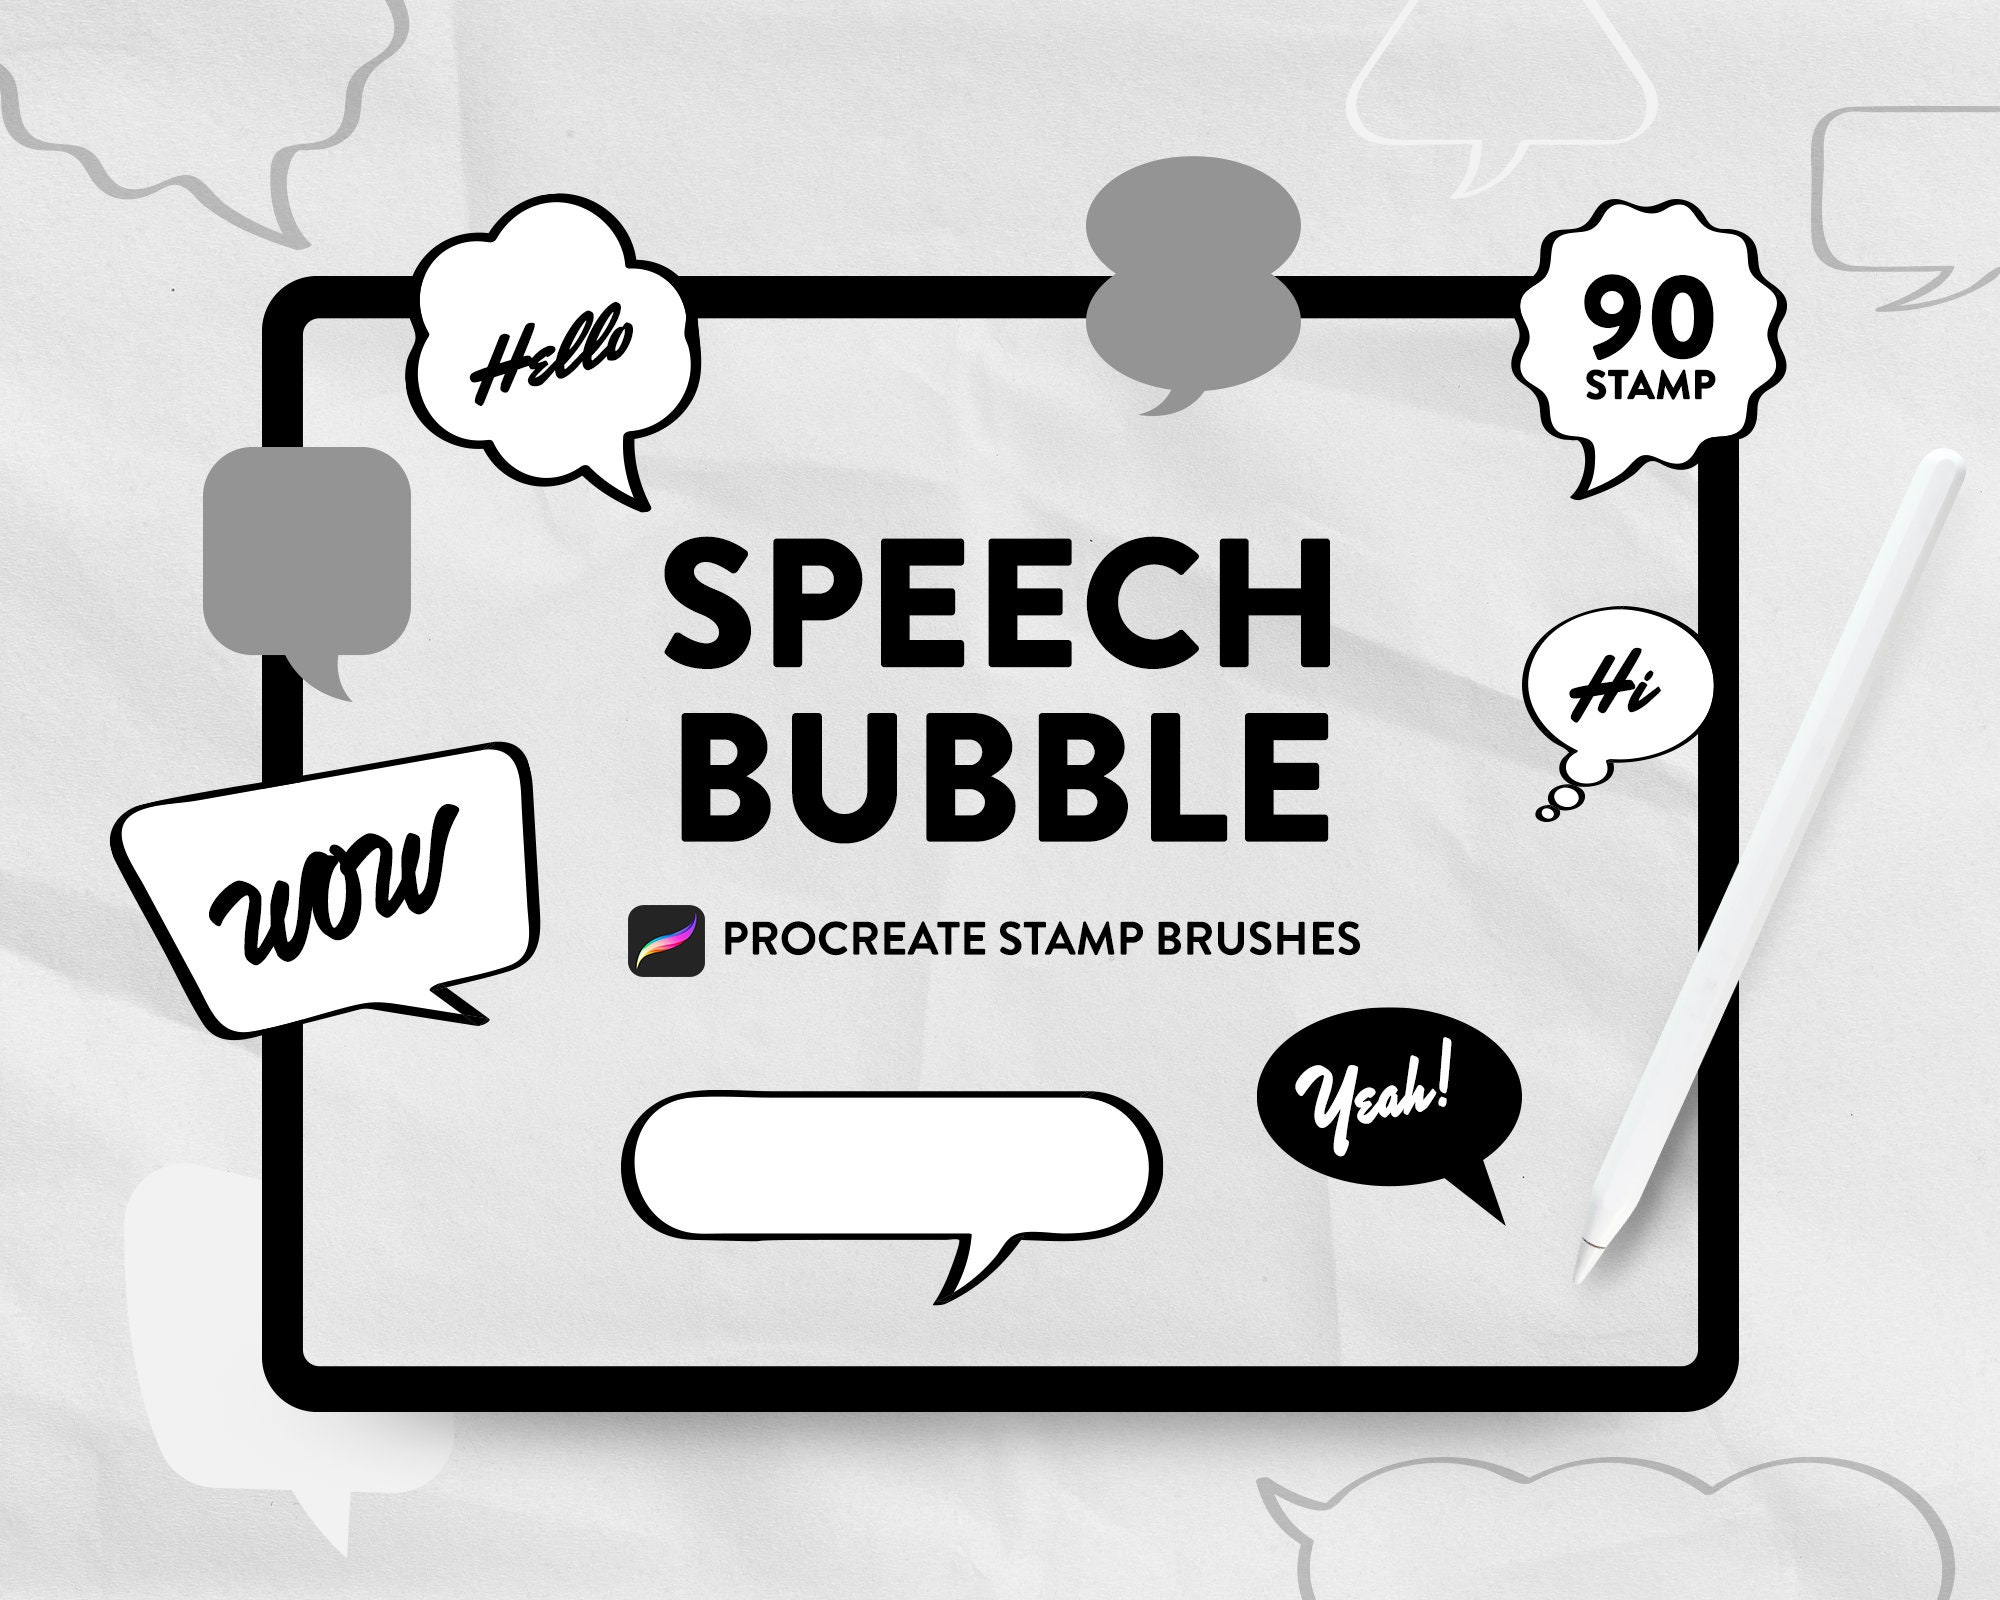 manga speech bubble brush procreate free